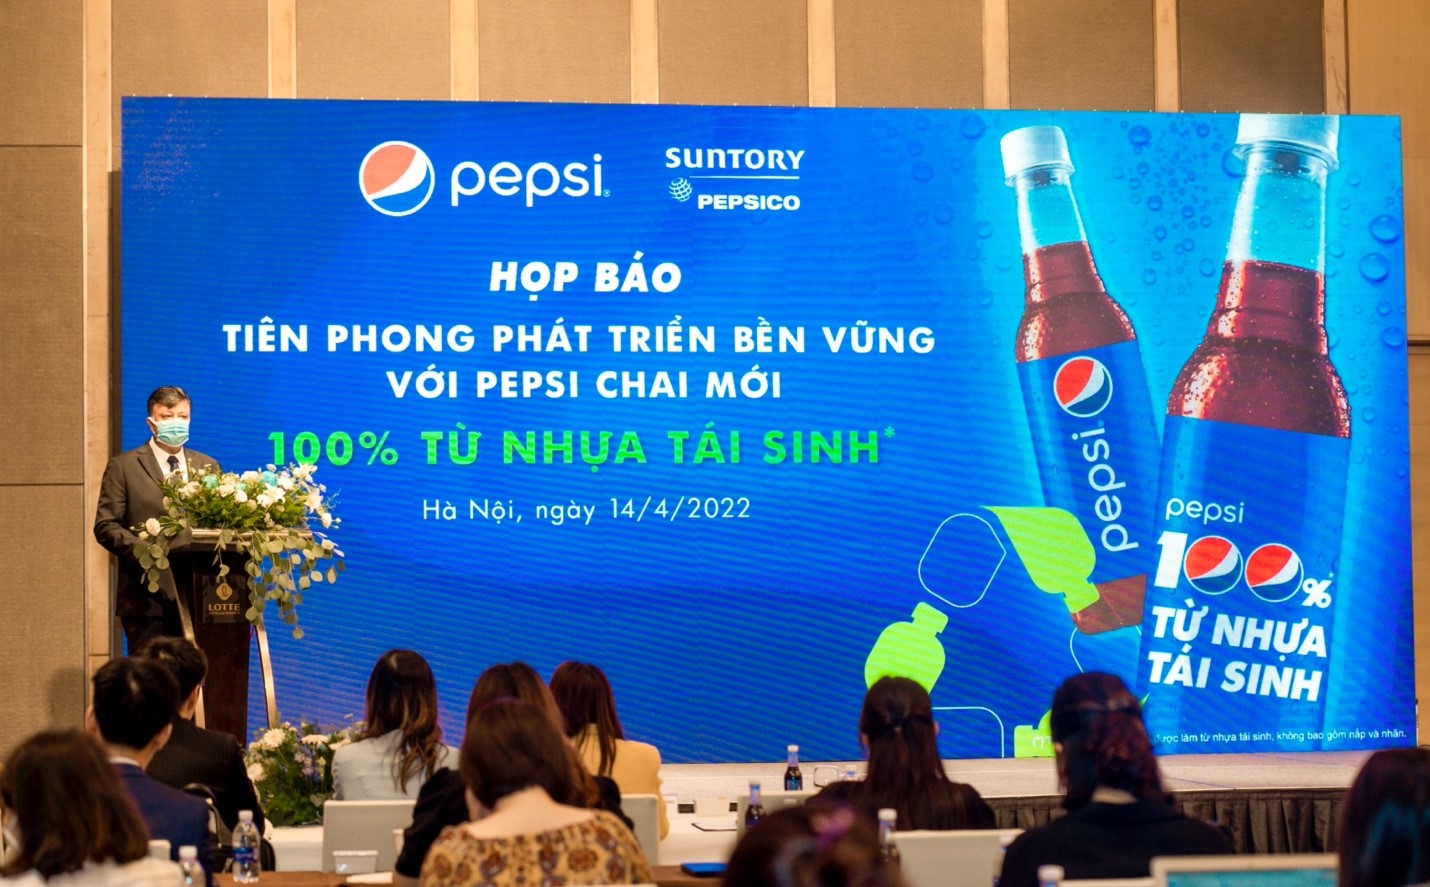 Sản phẩm Pepsi bao bì 100% từ nhựa tái sinh và hướng phát triển bền vững của ông lớn ngành giải khát